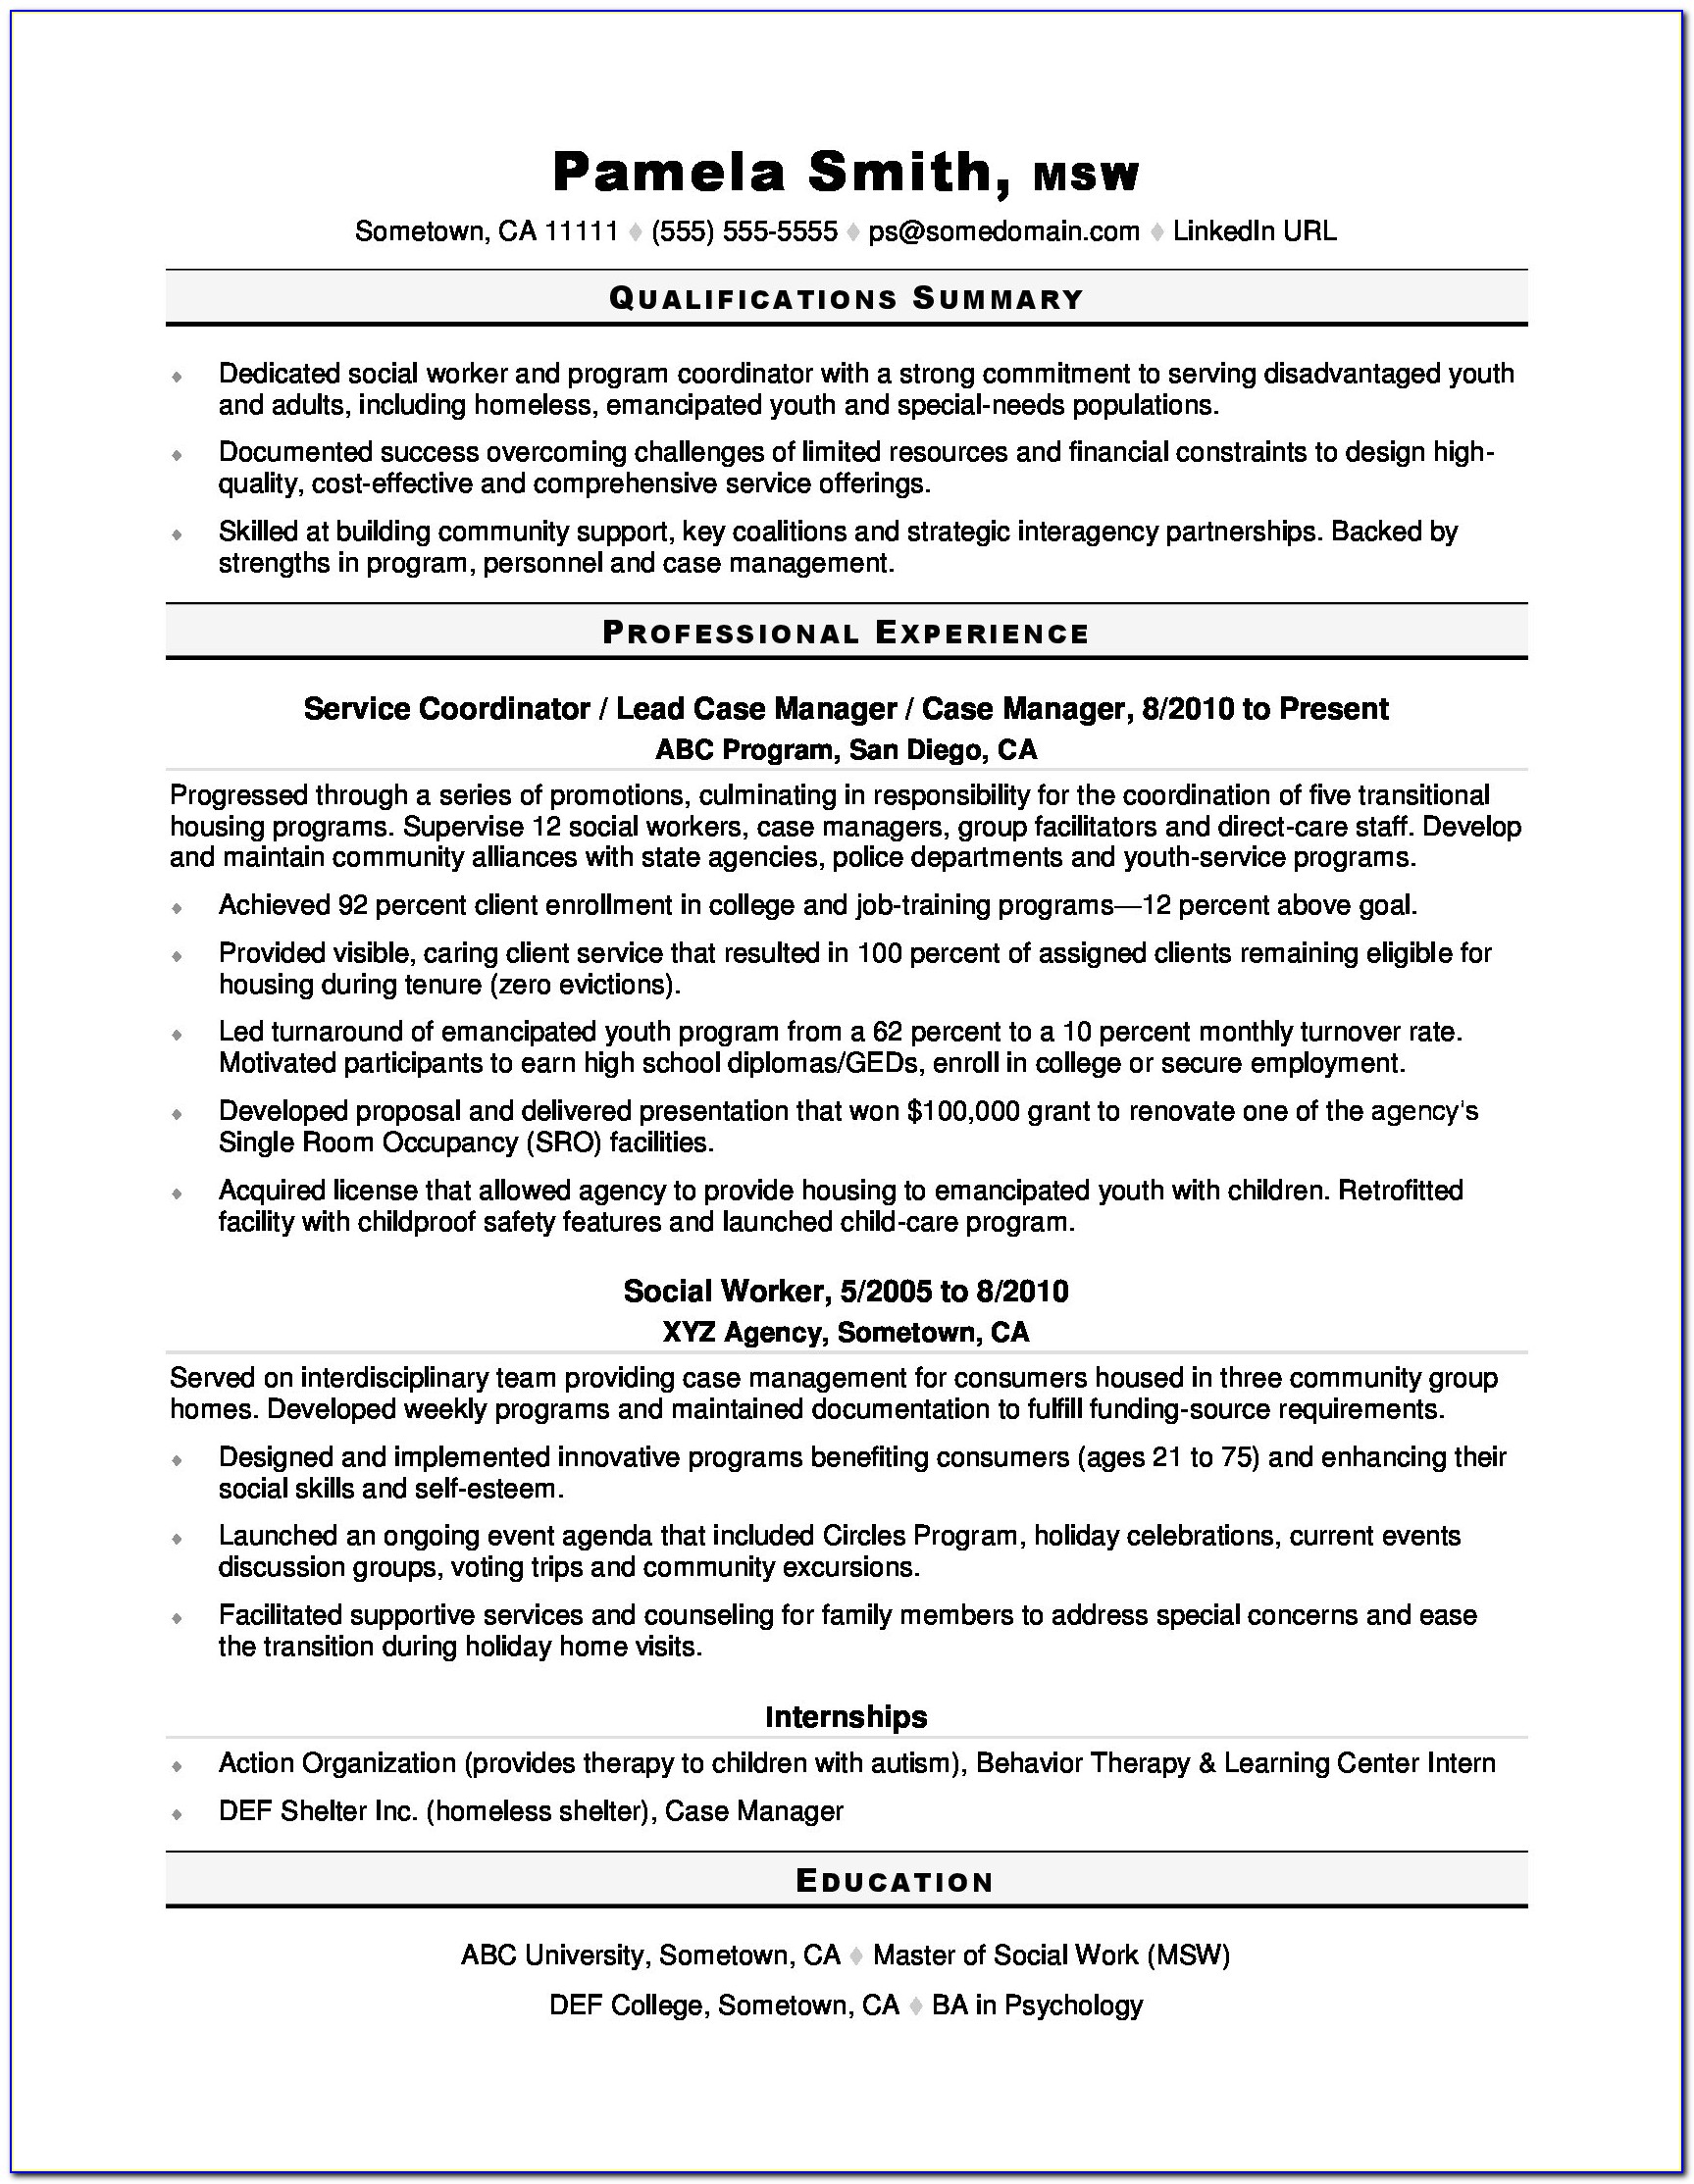 Sample Resume For School Social Worker